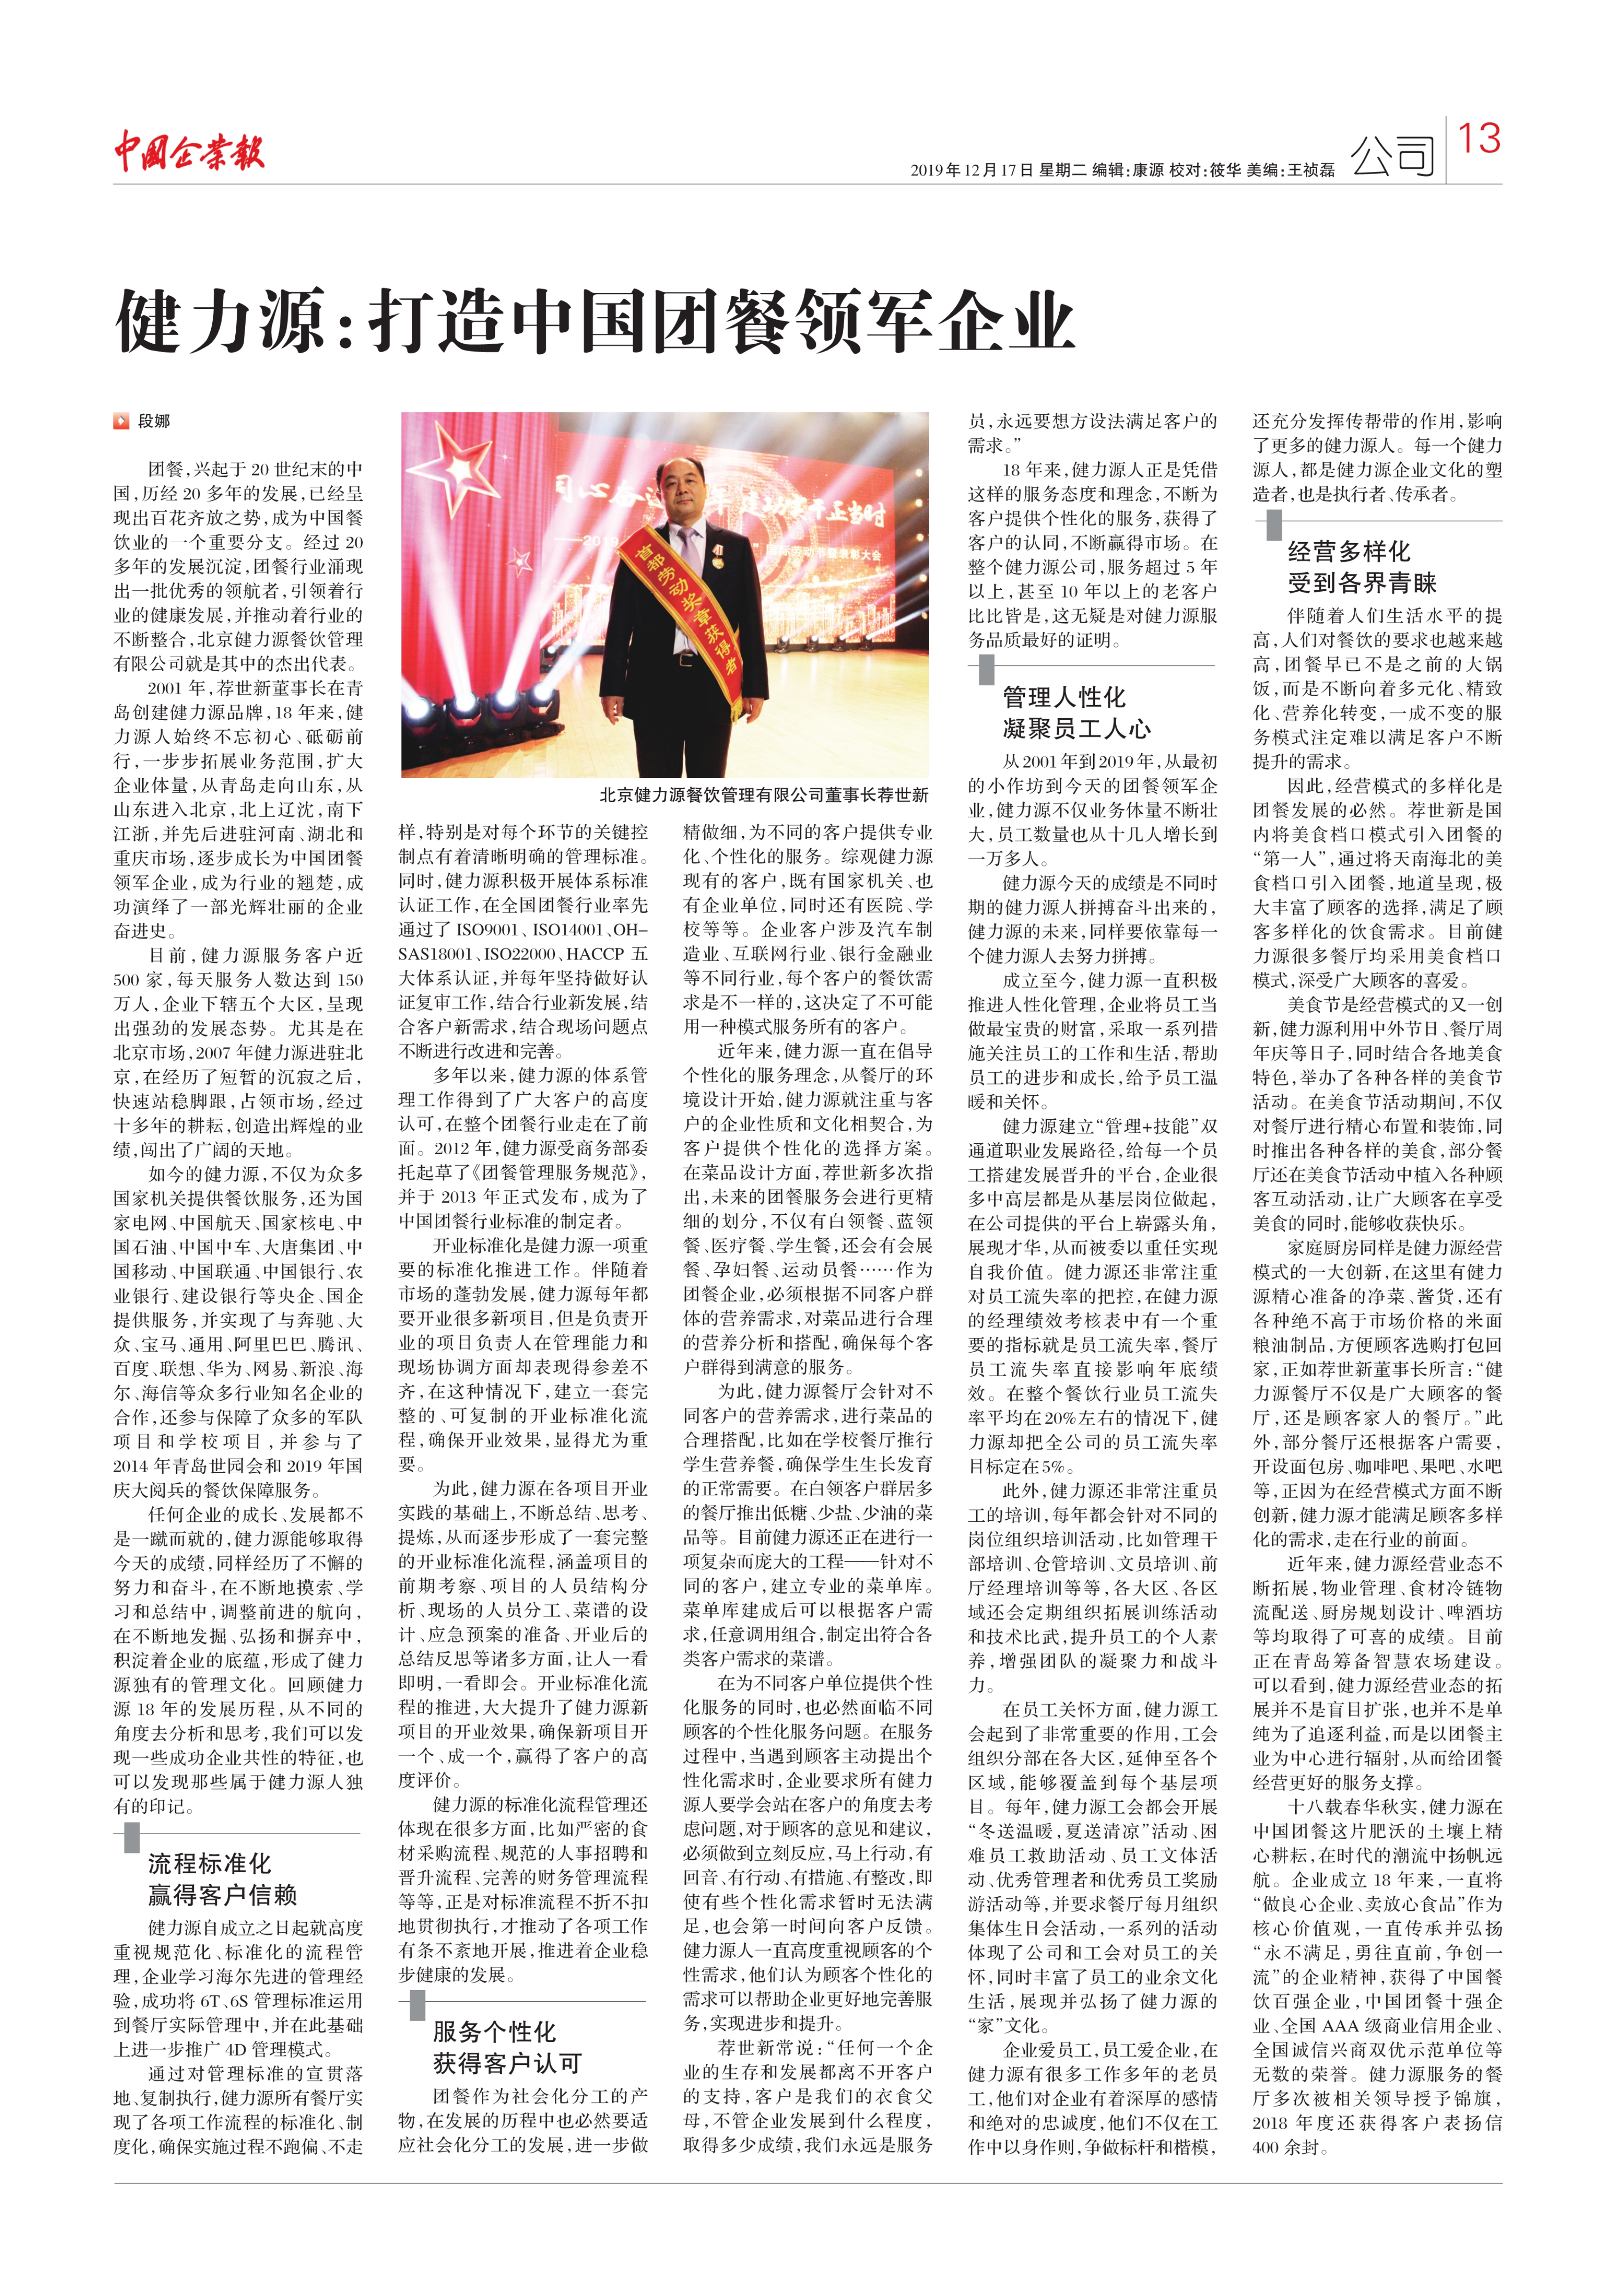 中国企业报——“aoa官方入口：打造中国团餐领军企业”